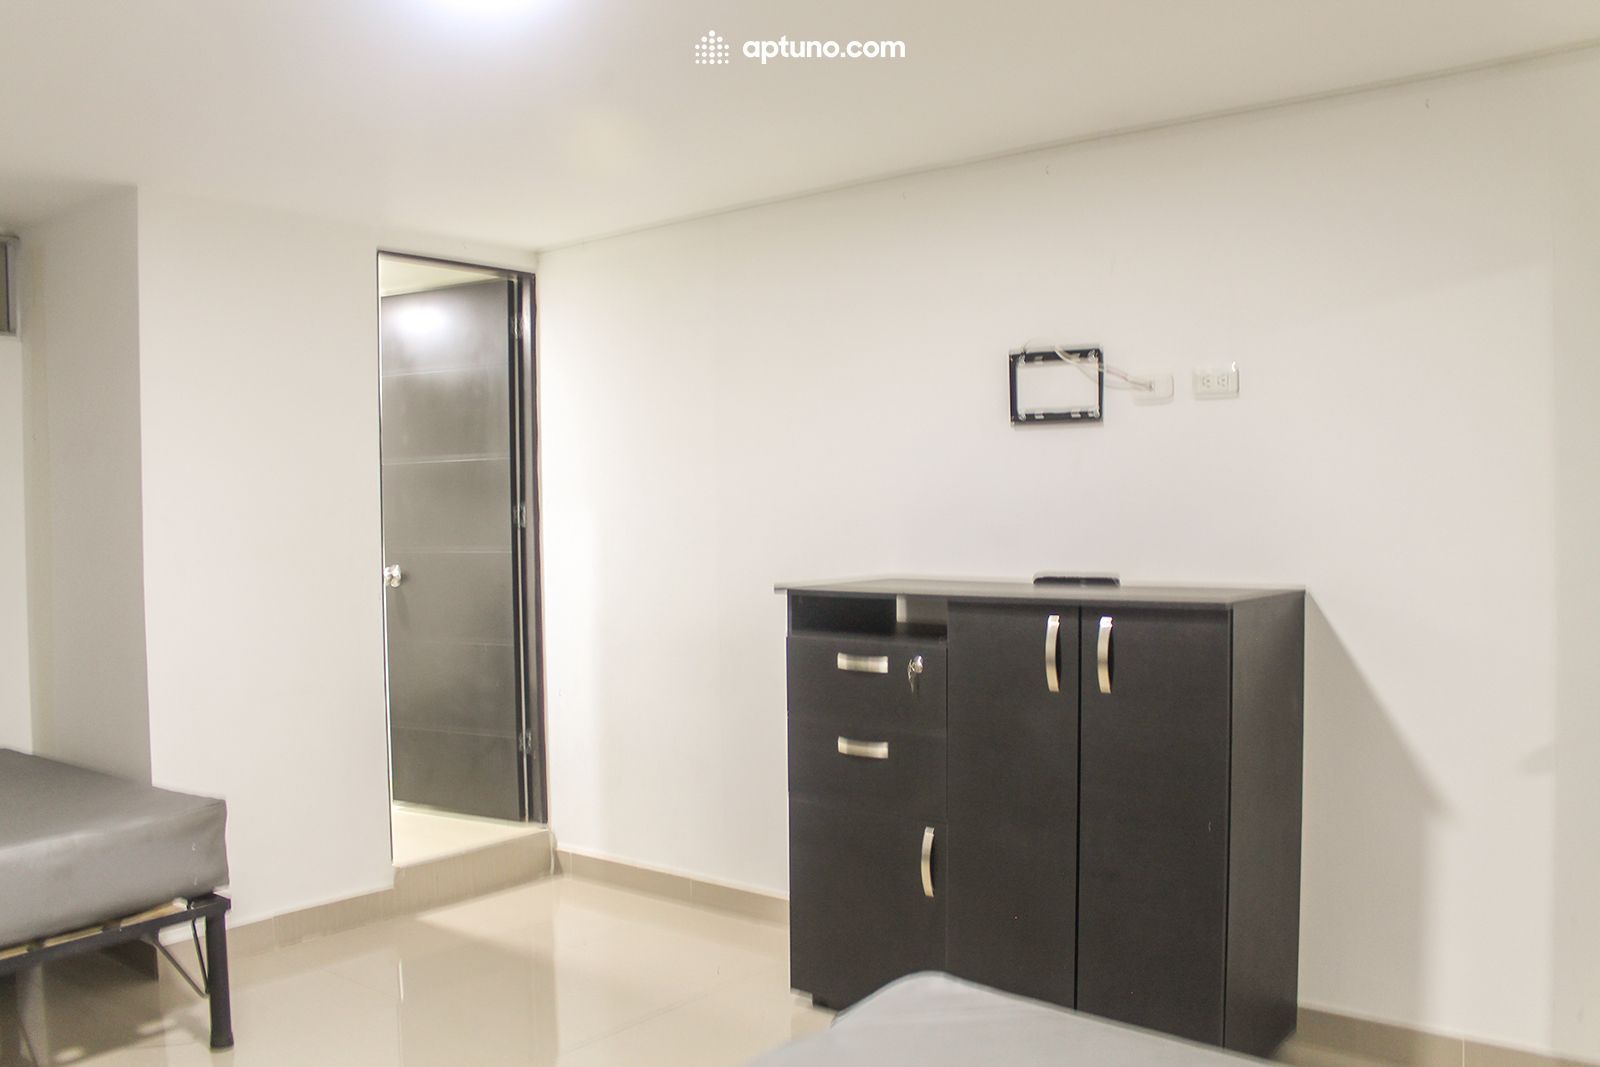 Apartamento en arriendo Chapinero Central 40 m² - $ 2.200.000,00